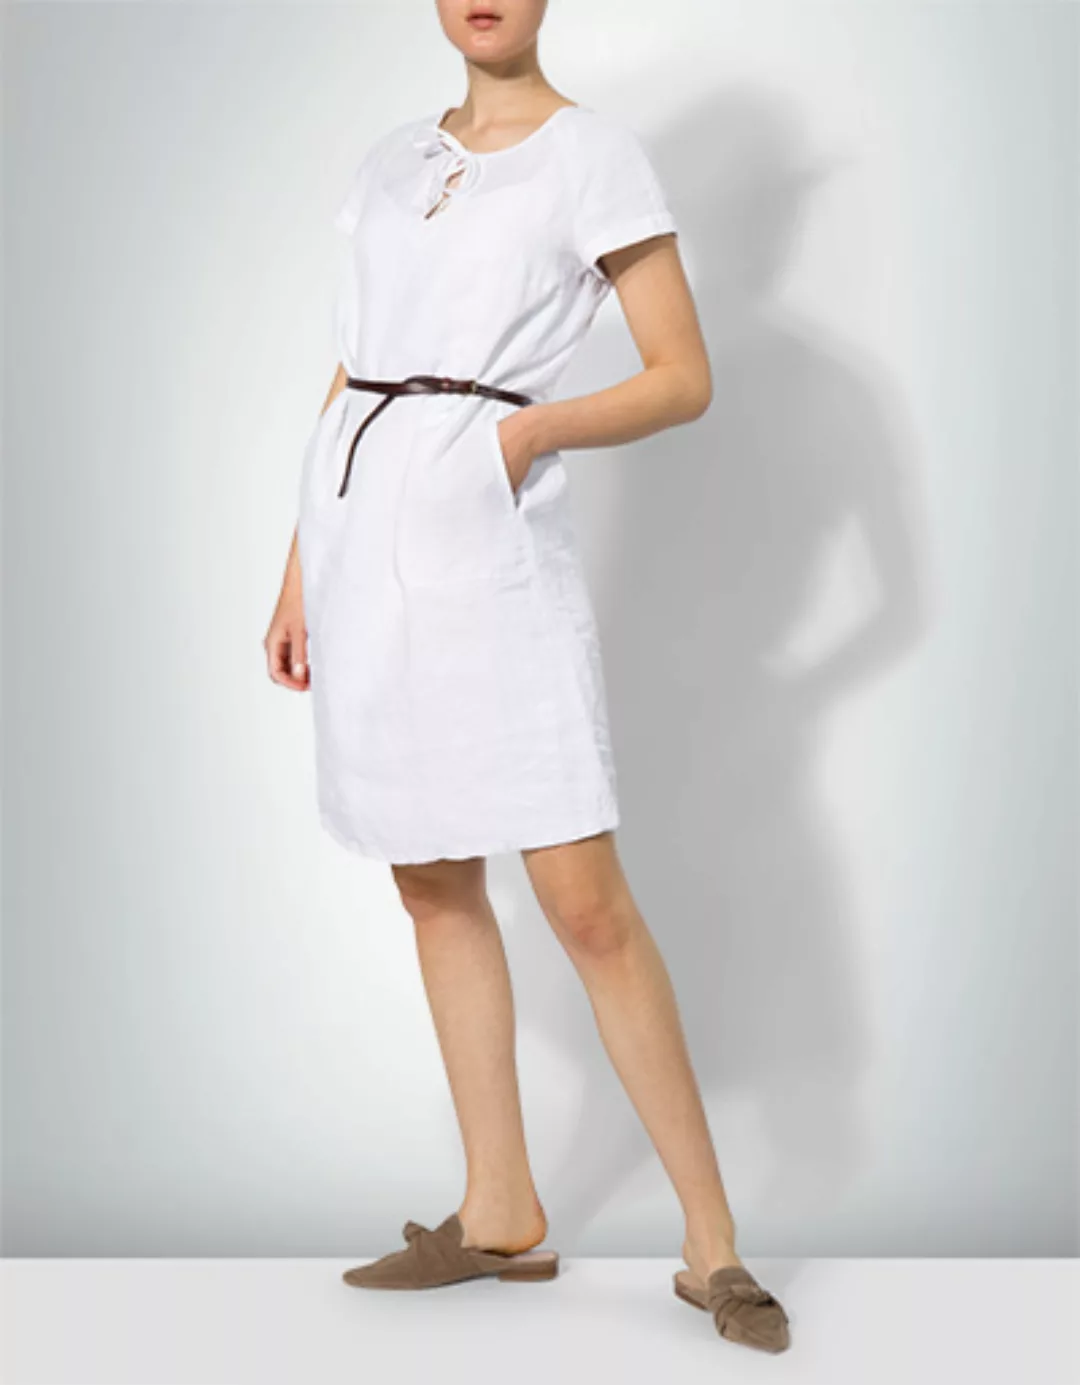 Marc O'Polo Damen Kleid 904 0919 21061/100 günstig online kaufen